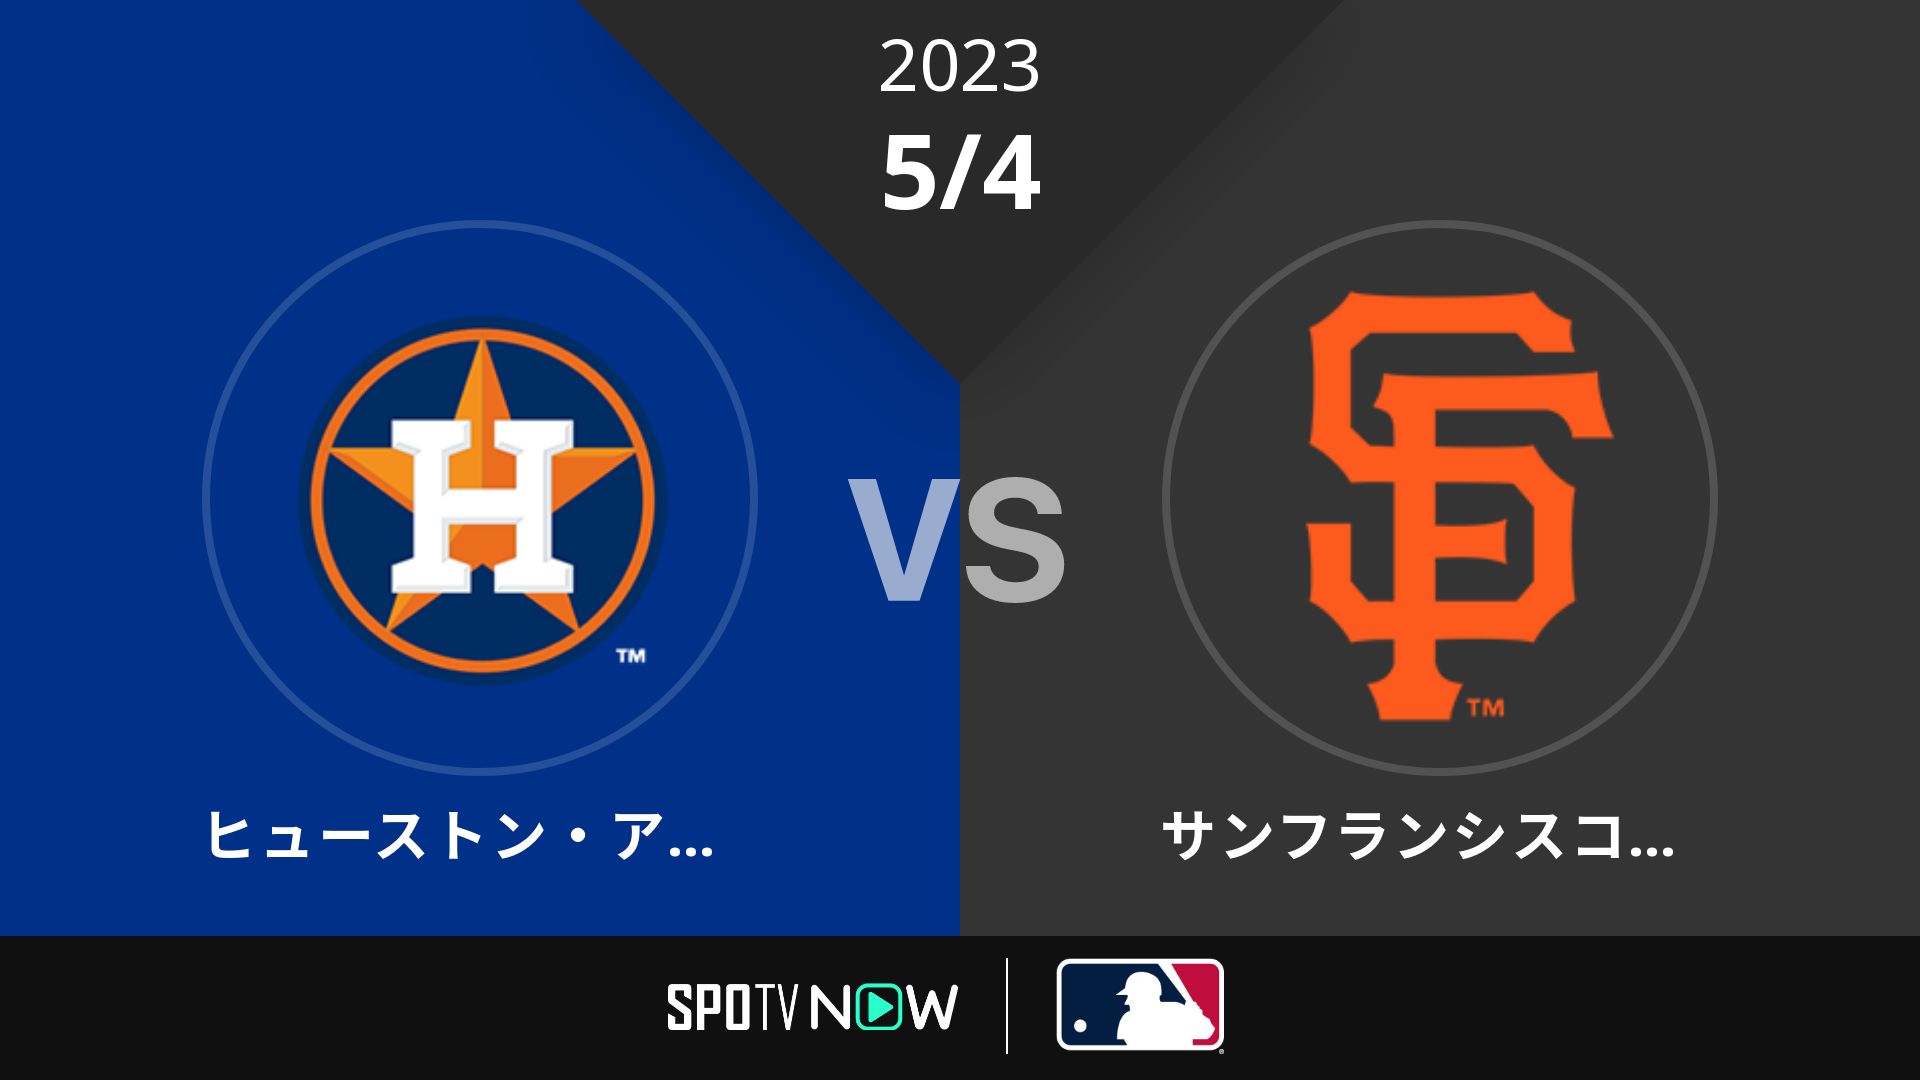 2023/5/4 アストロズ vs ジャイアンツ [MLB]